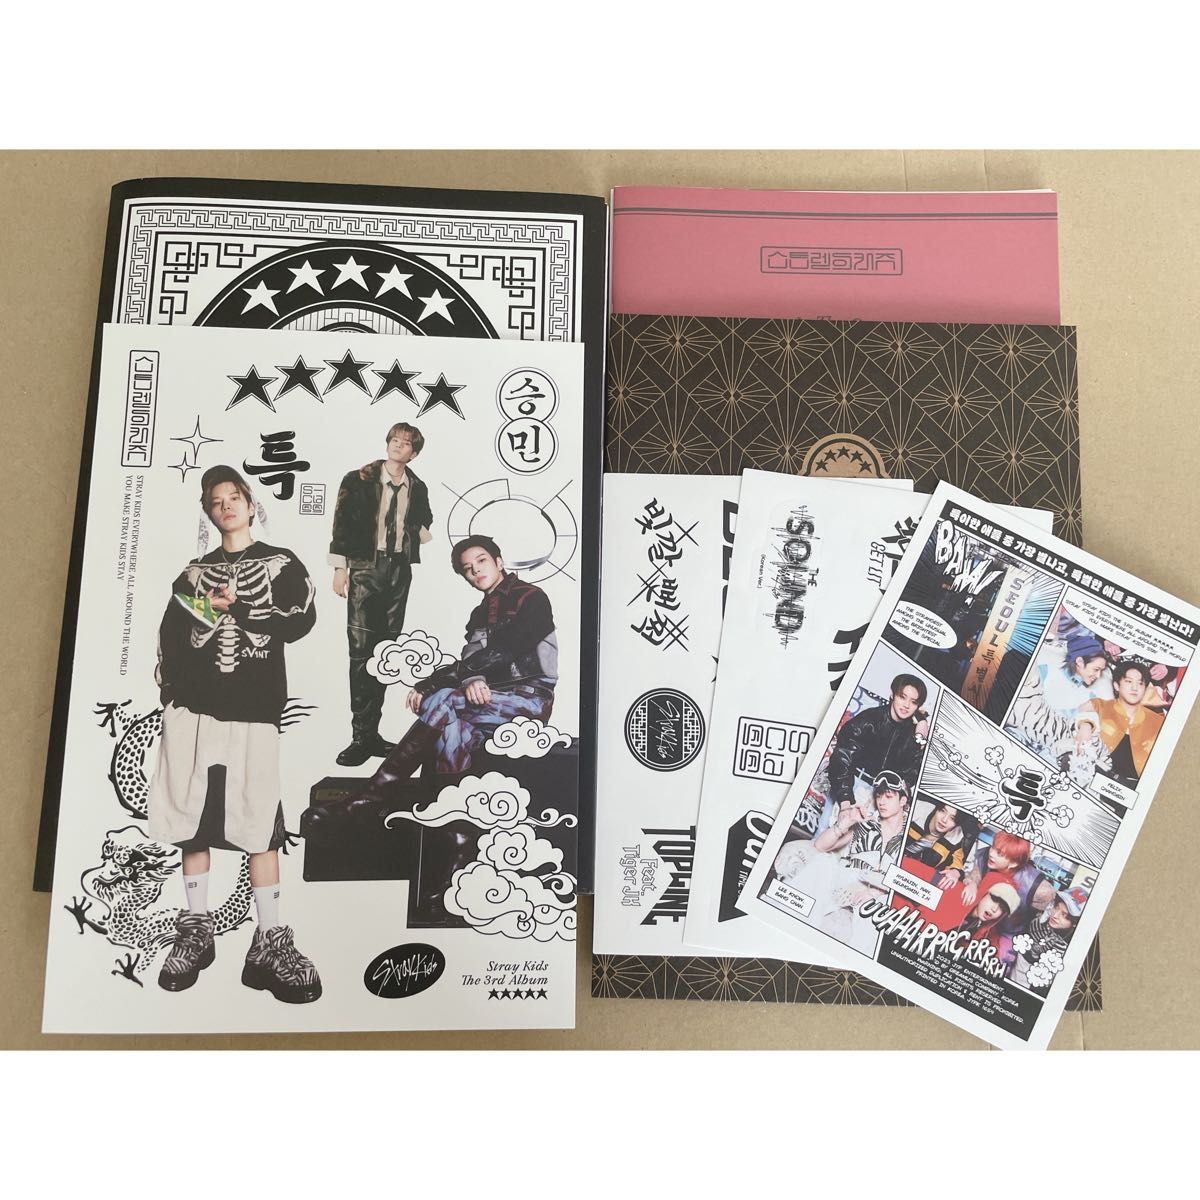 Stray Kids スキズ 5-STAR 通常盤 アルバム CD スンミン